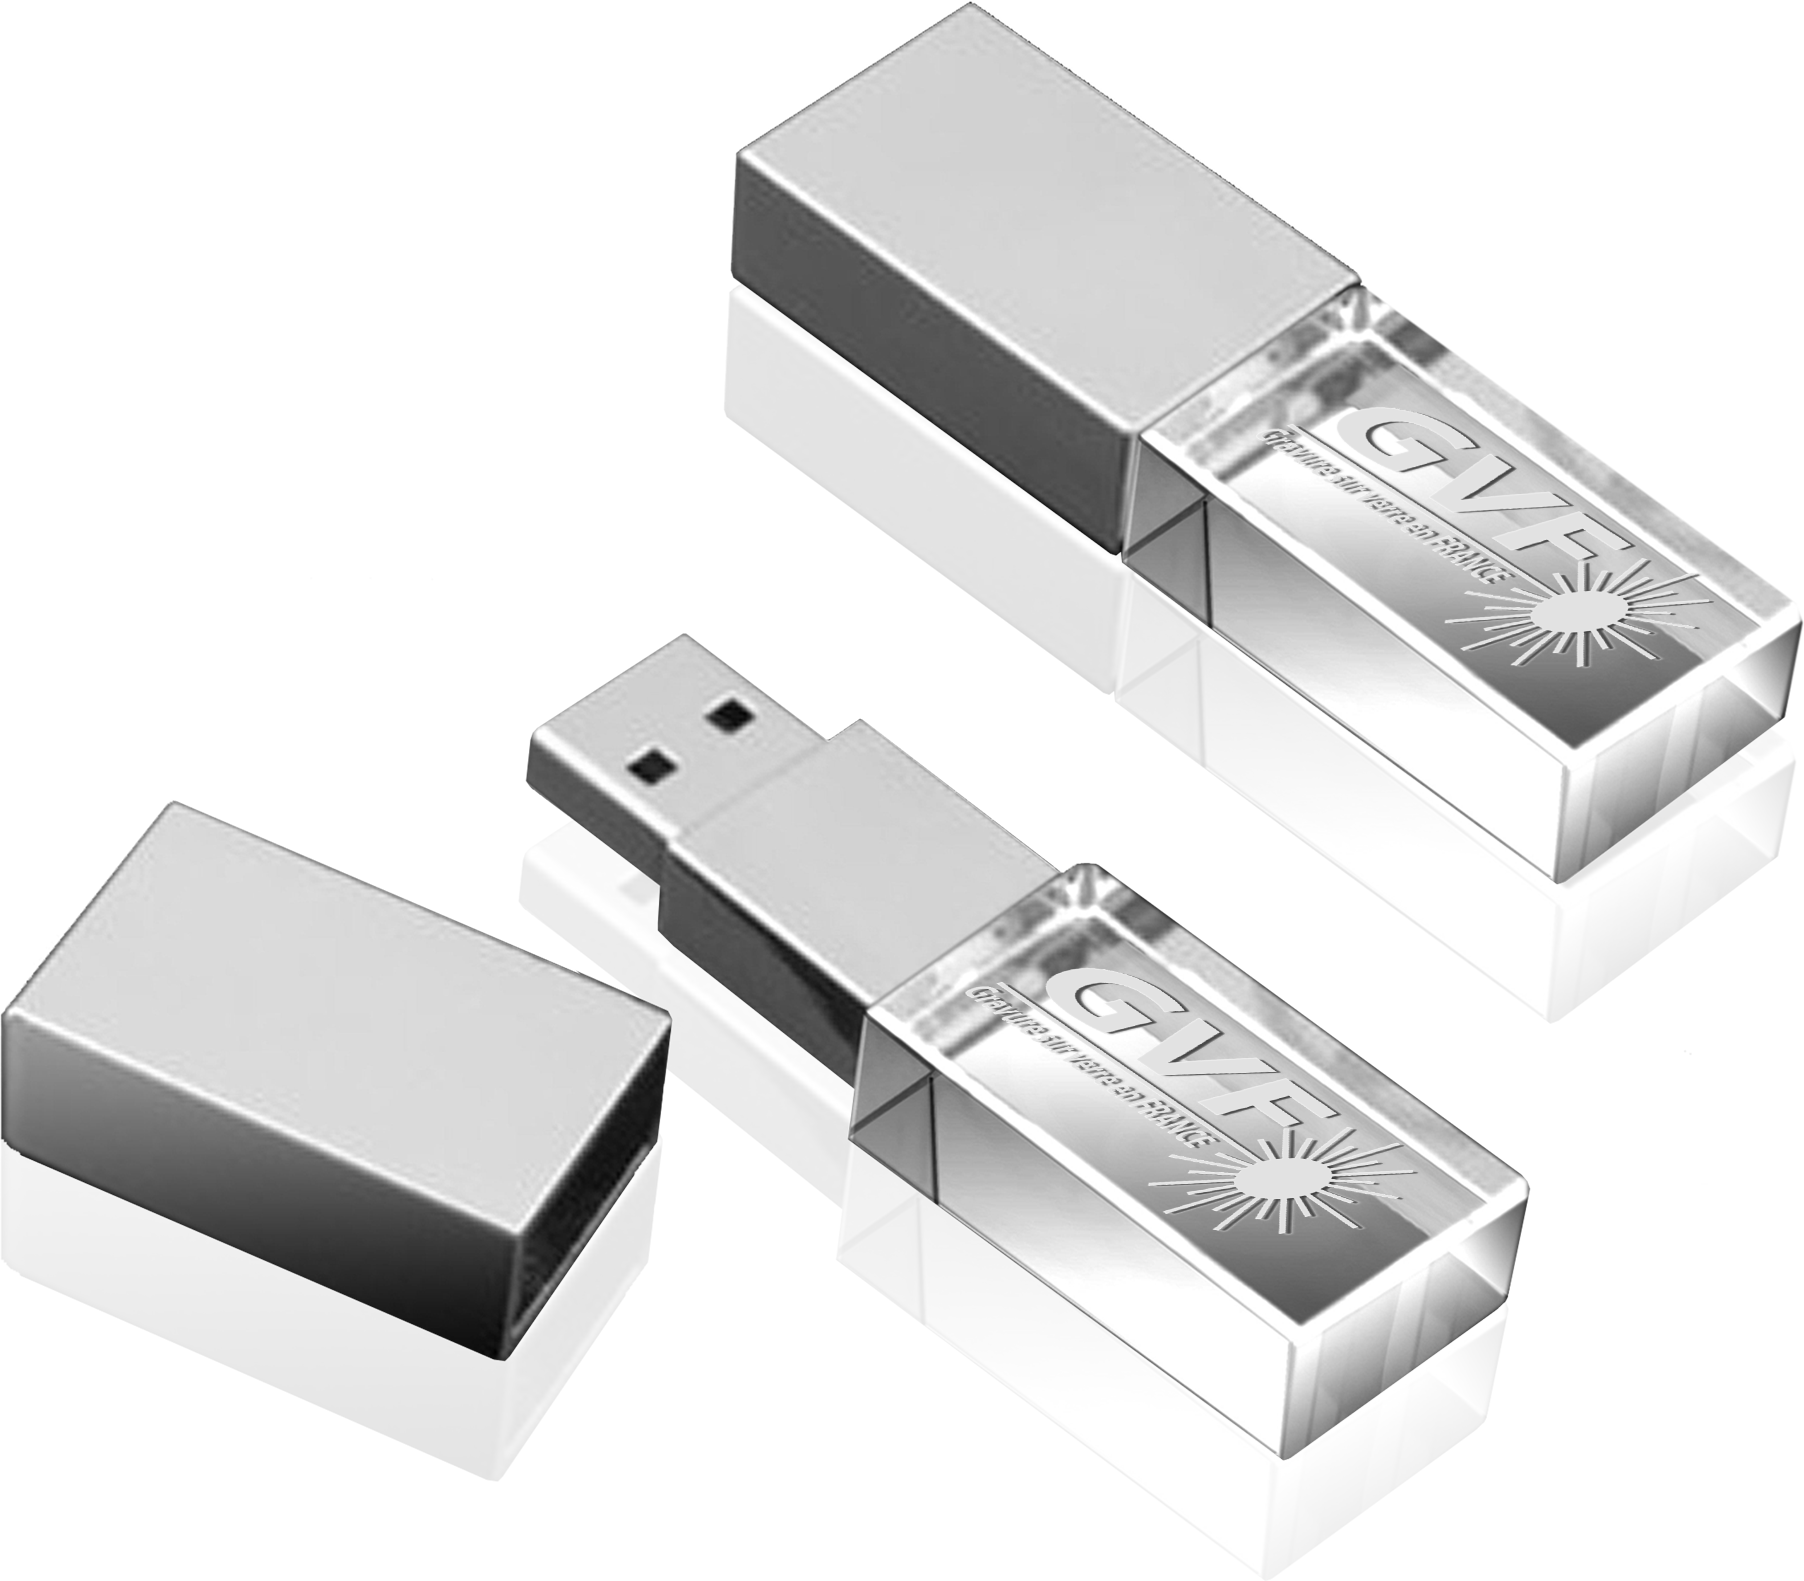 Clés USB personnalisées